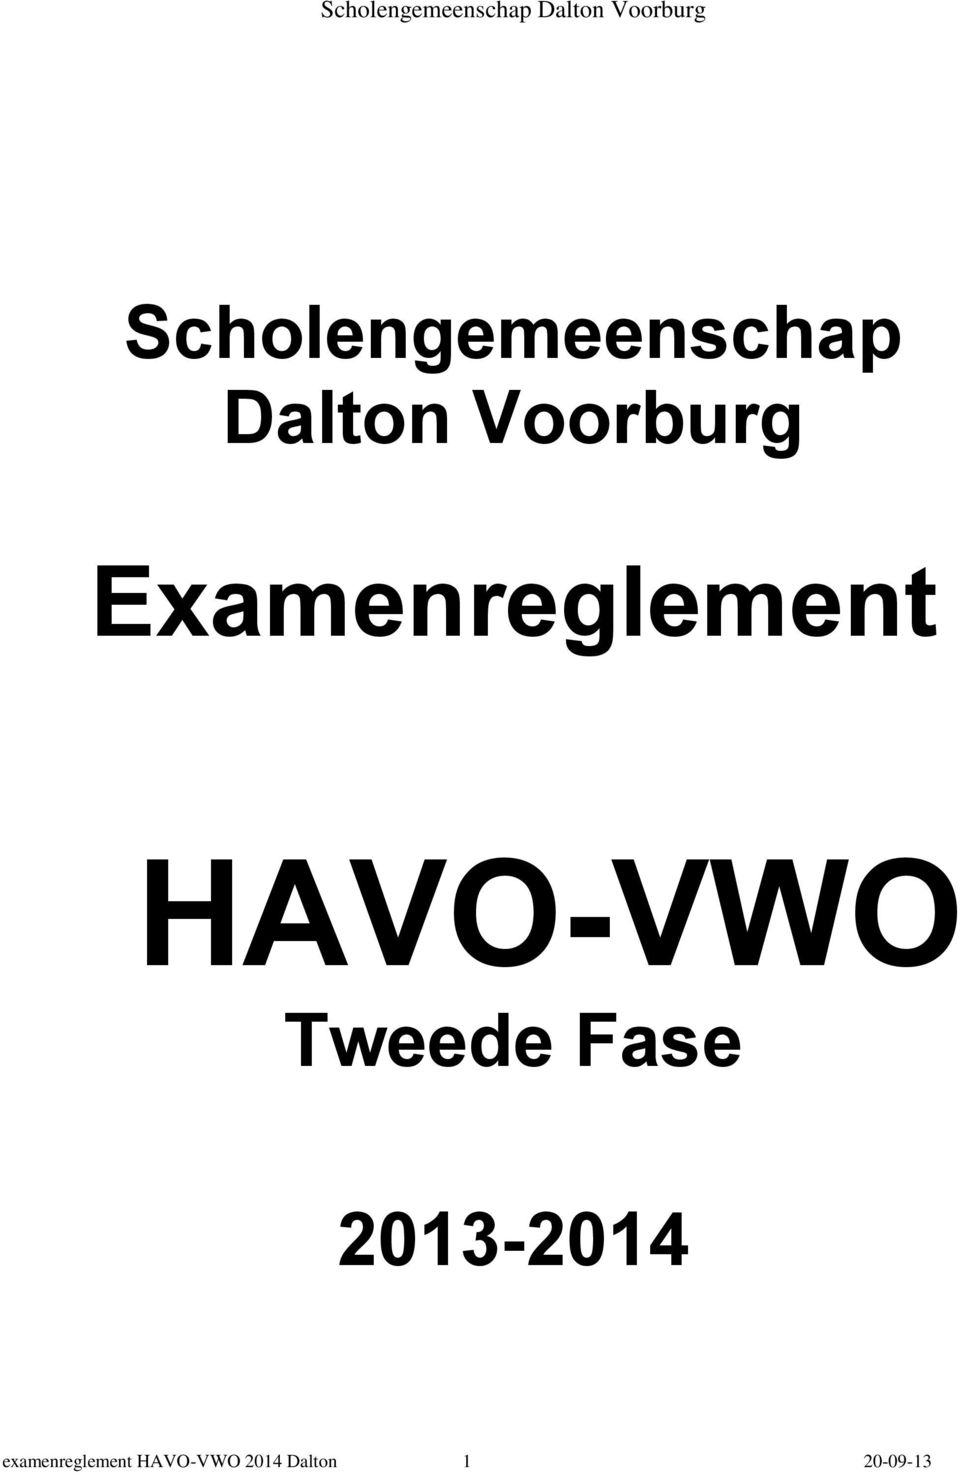 HAVO-VWO Tweede Fase 2013-2014